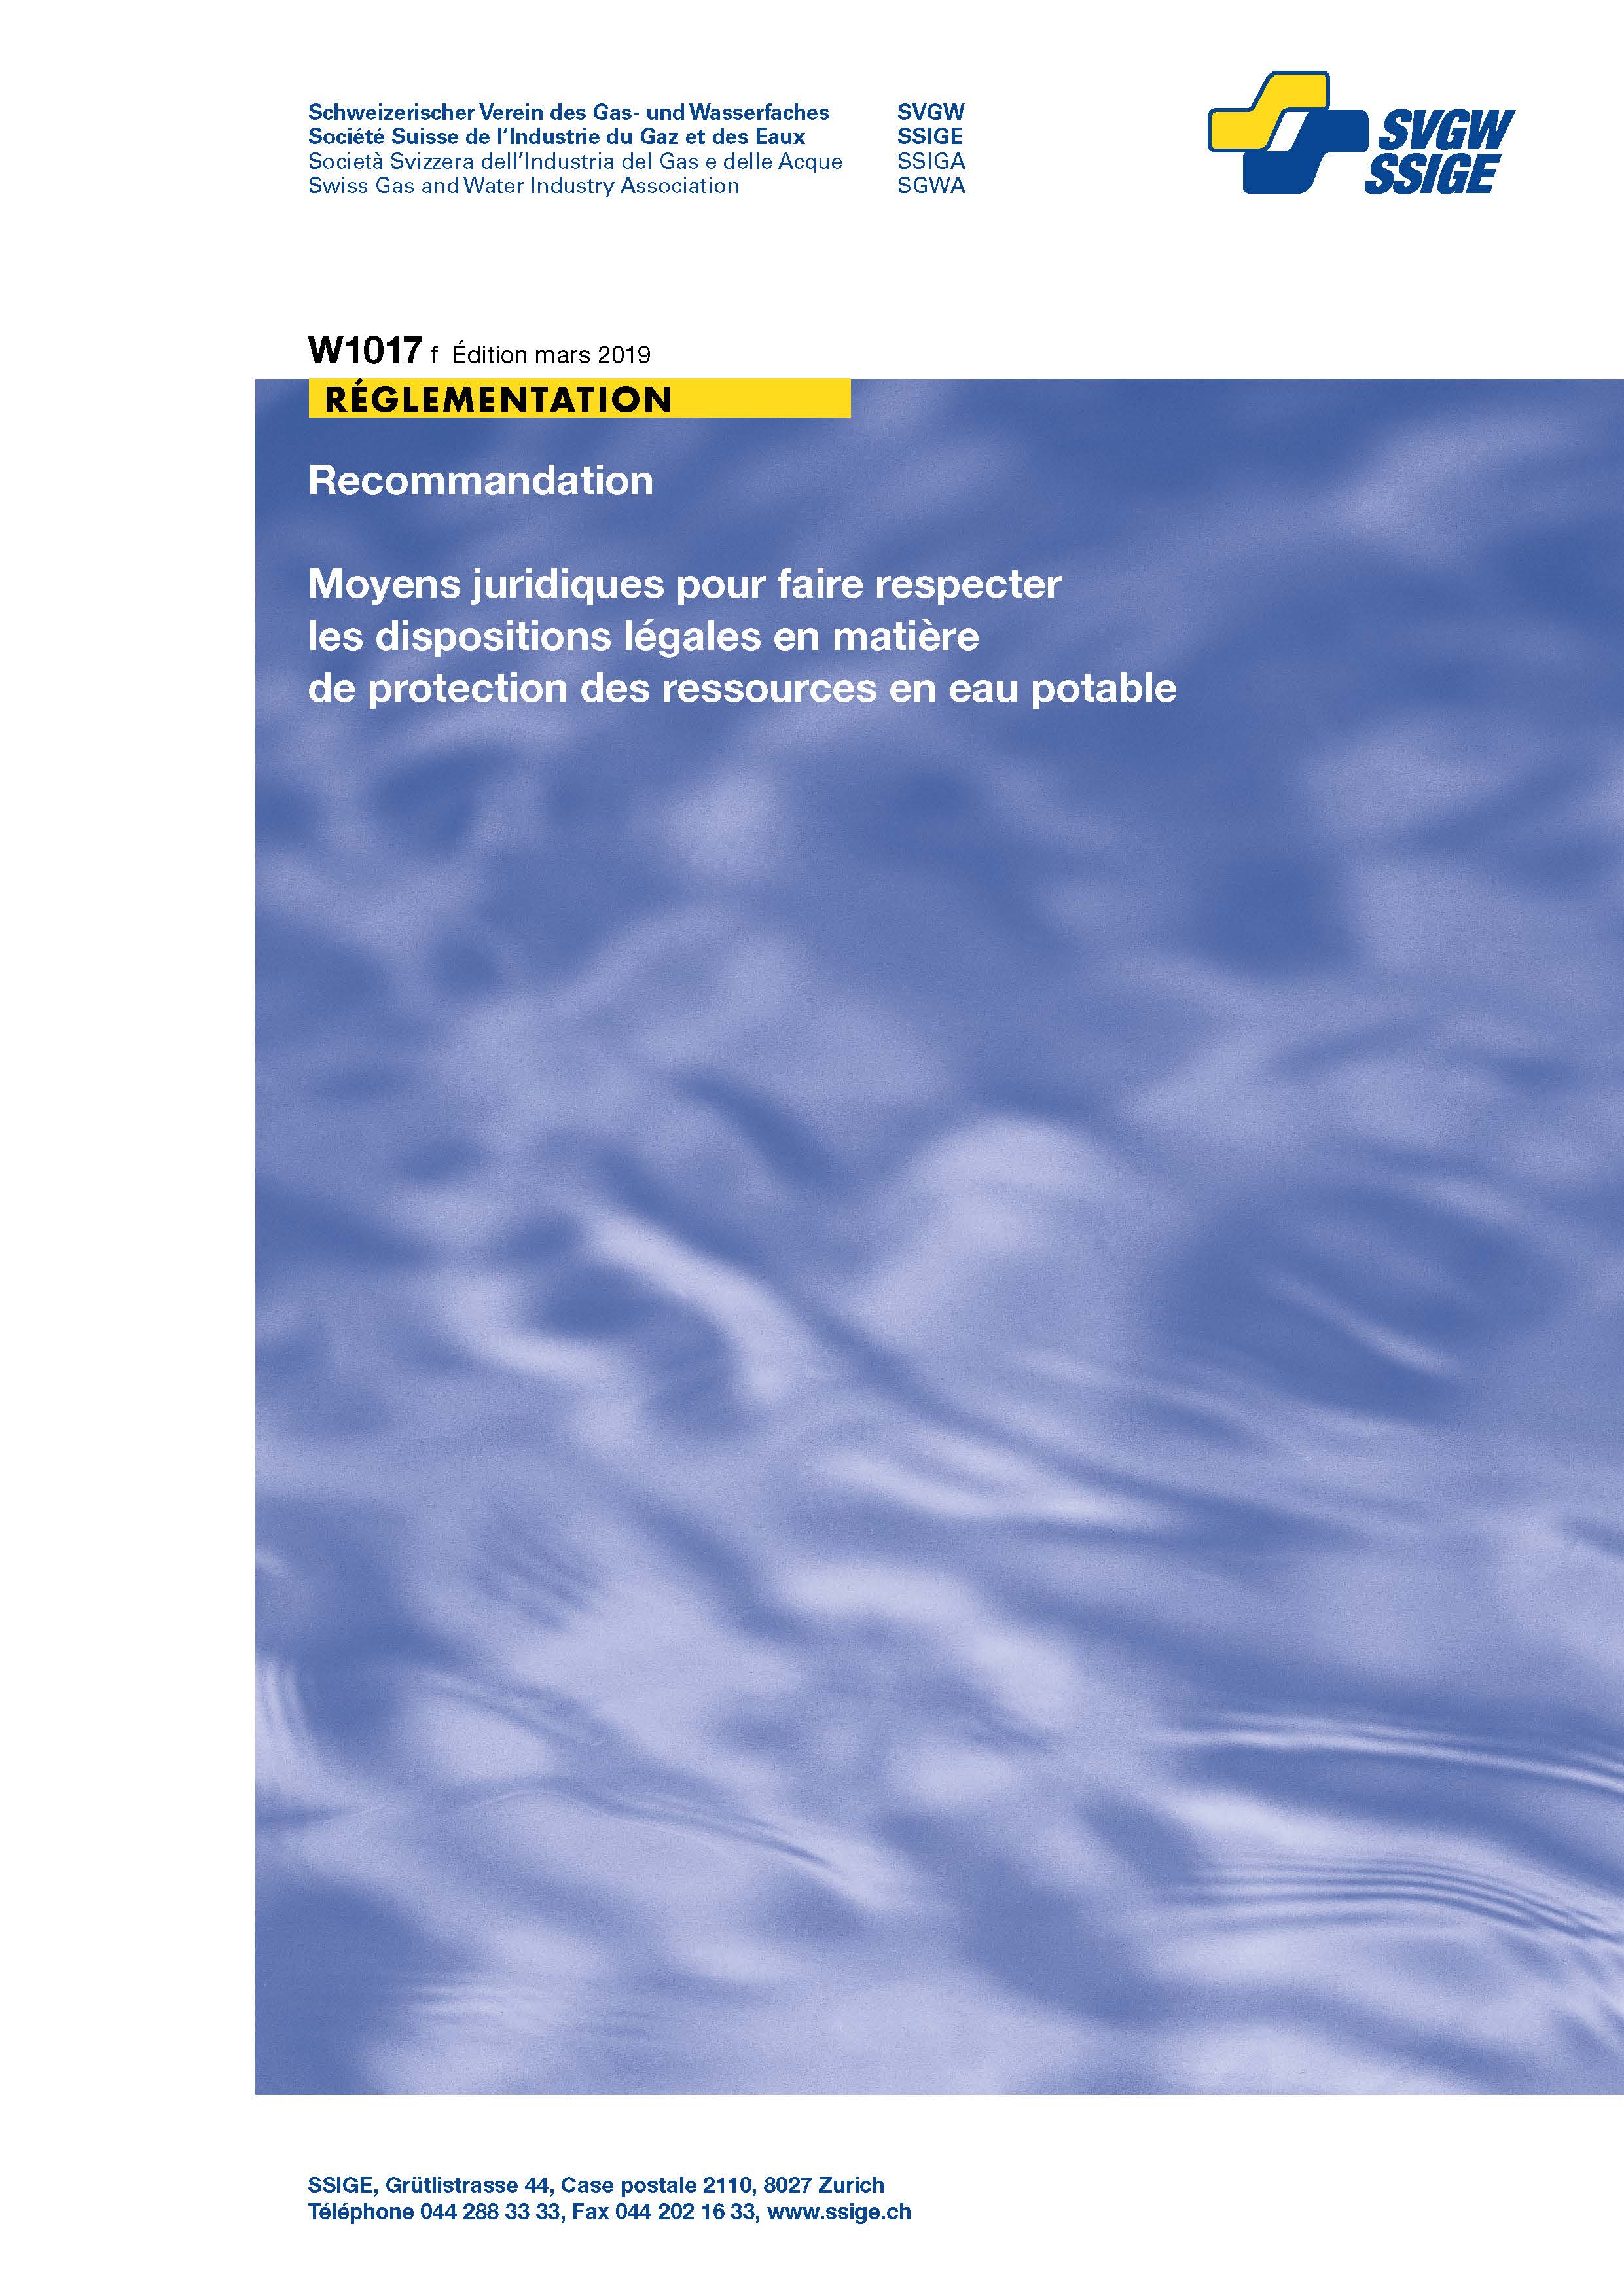 W1017 f Recommandation; Moyens juridiques pour faire respecter les dispositions légales en matière de protection des ressources en eau potable